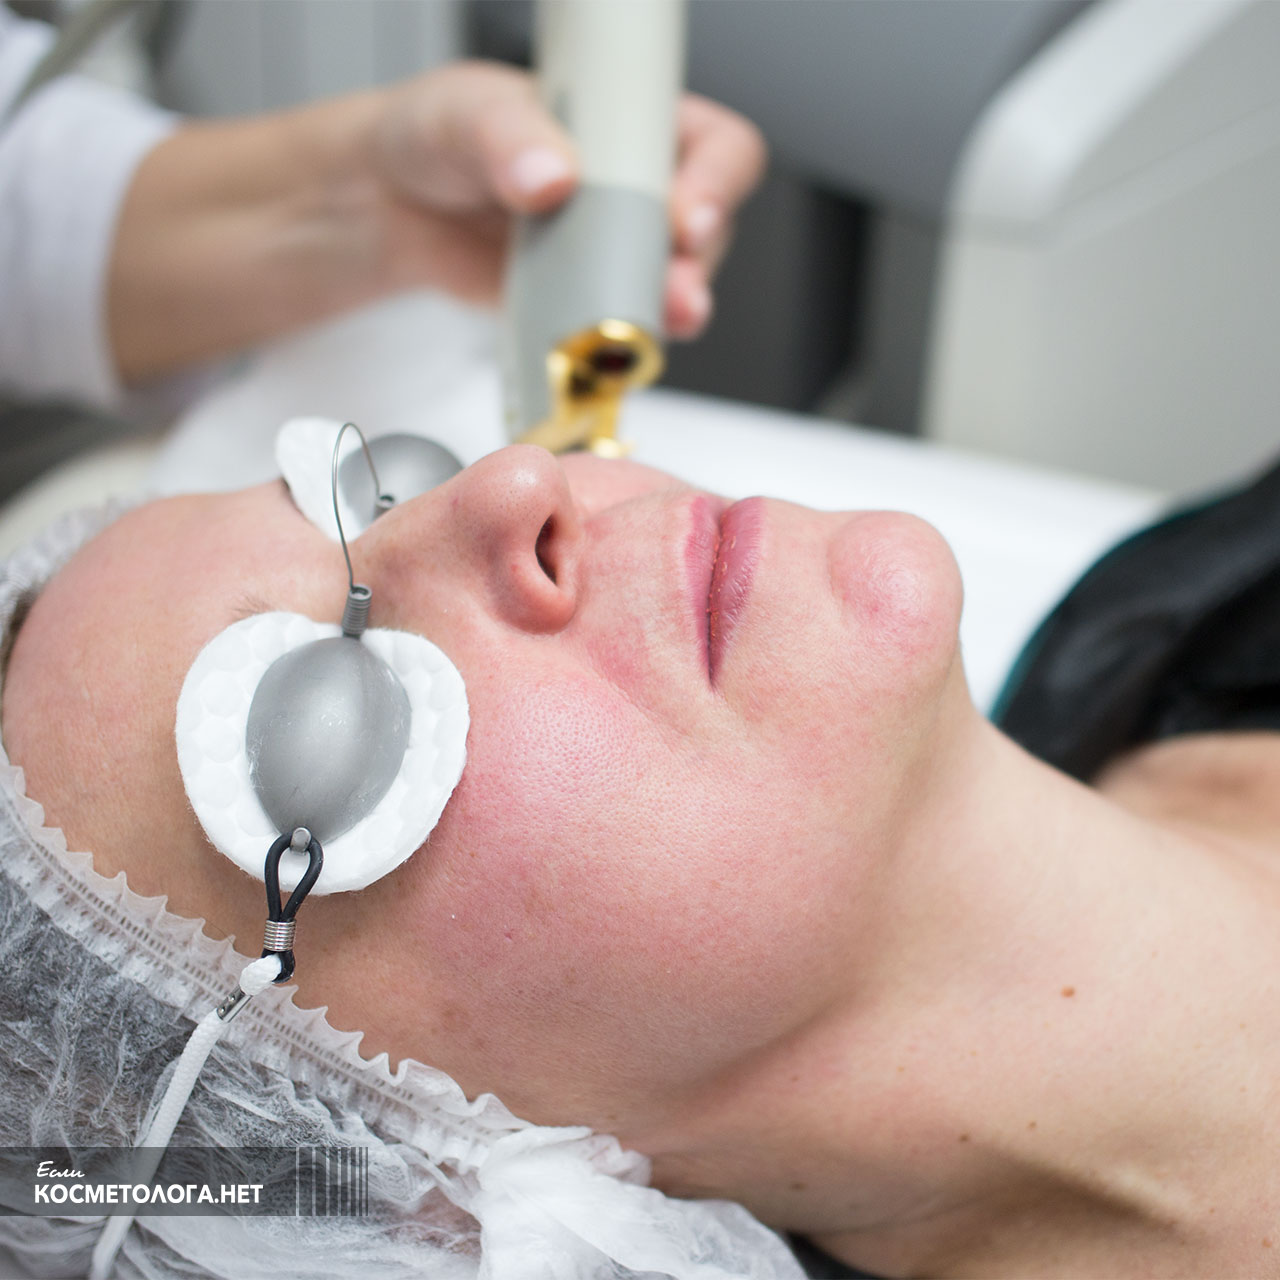 Косметолог выполняет процедуру Laser Genesis и кожа постепенно краснеет